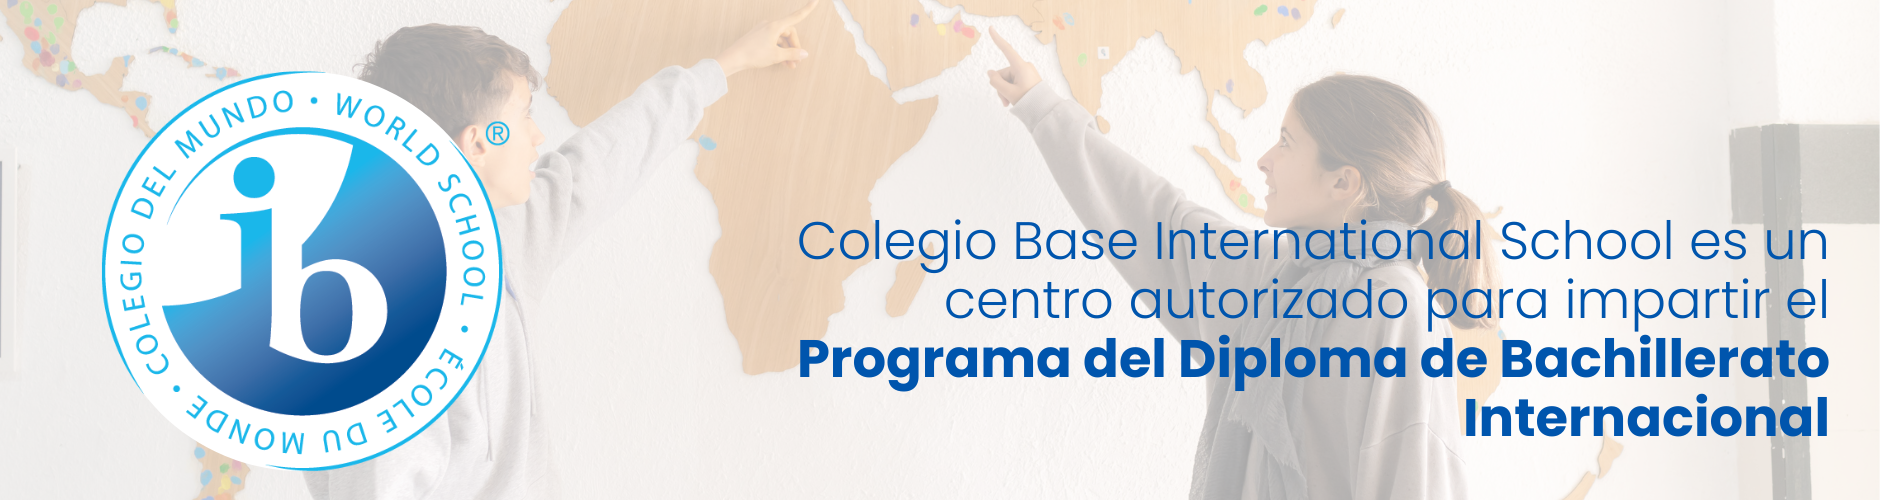 Programa del Diploma del Bachillerato Internacional - Colegio Base International School